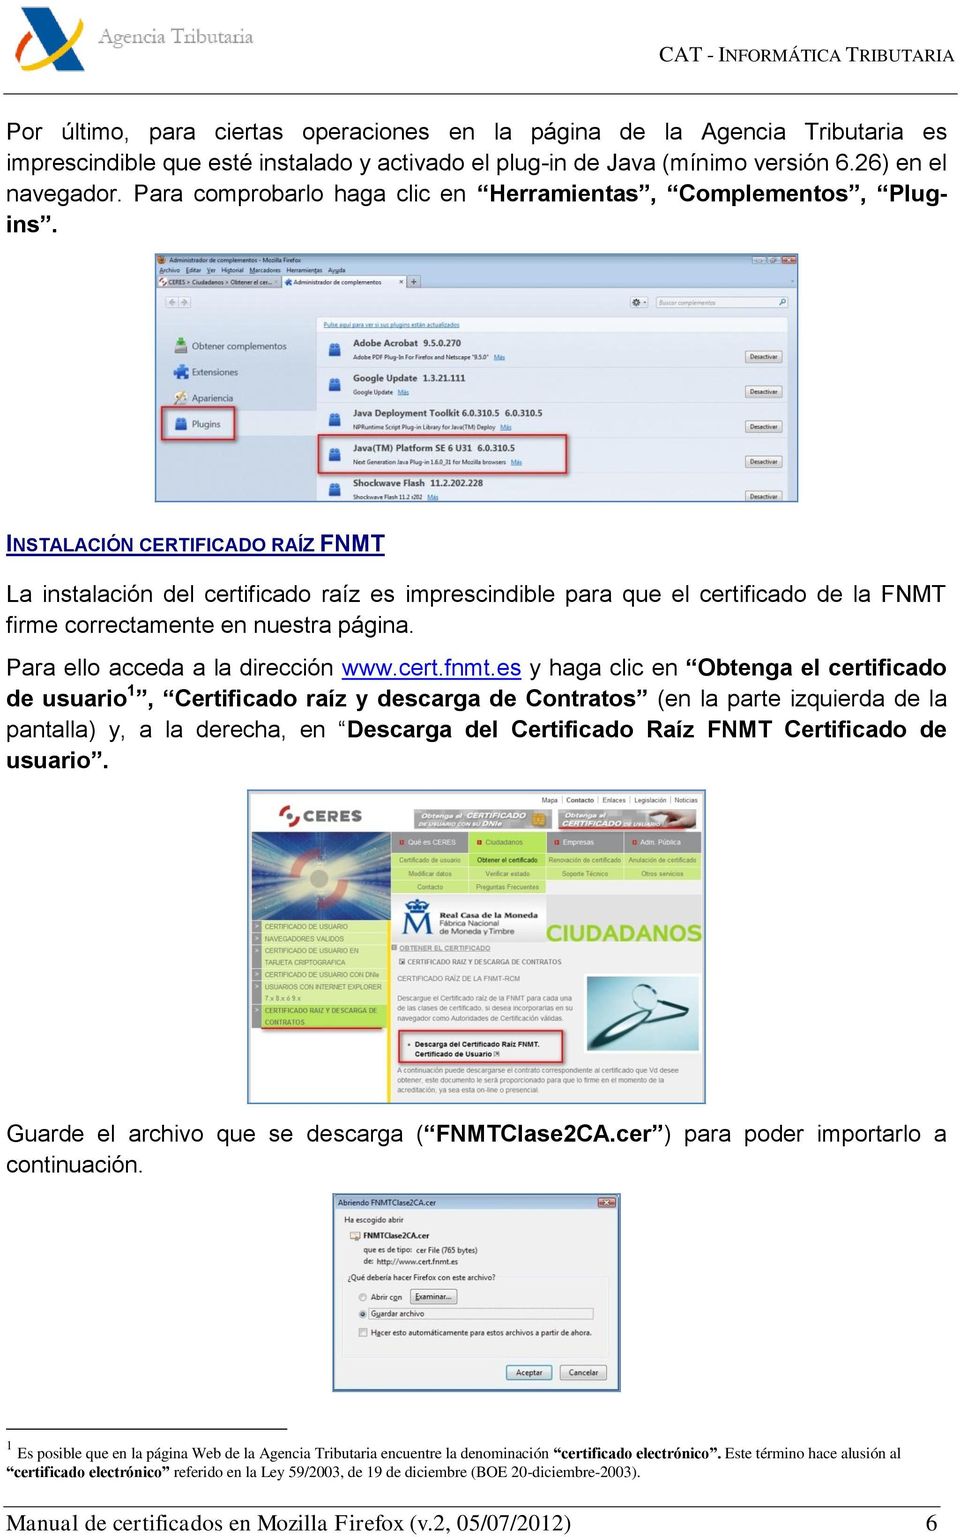 INSTALACIÓN CERTIFICADO RAÍZ FNMT La instalación del certificado raíz es imprescindible para que el certificado de la FNMT firme correctamente en nuestra página. Para ello acceda a la dirección www.